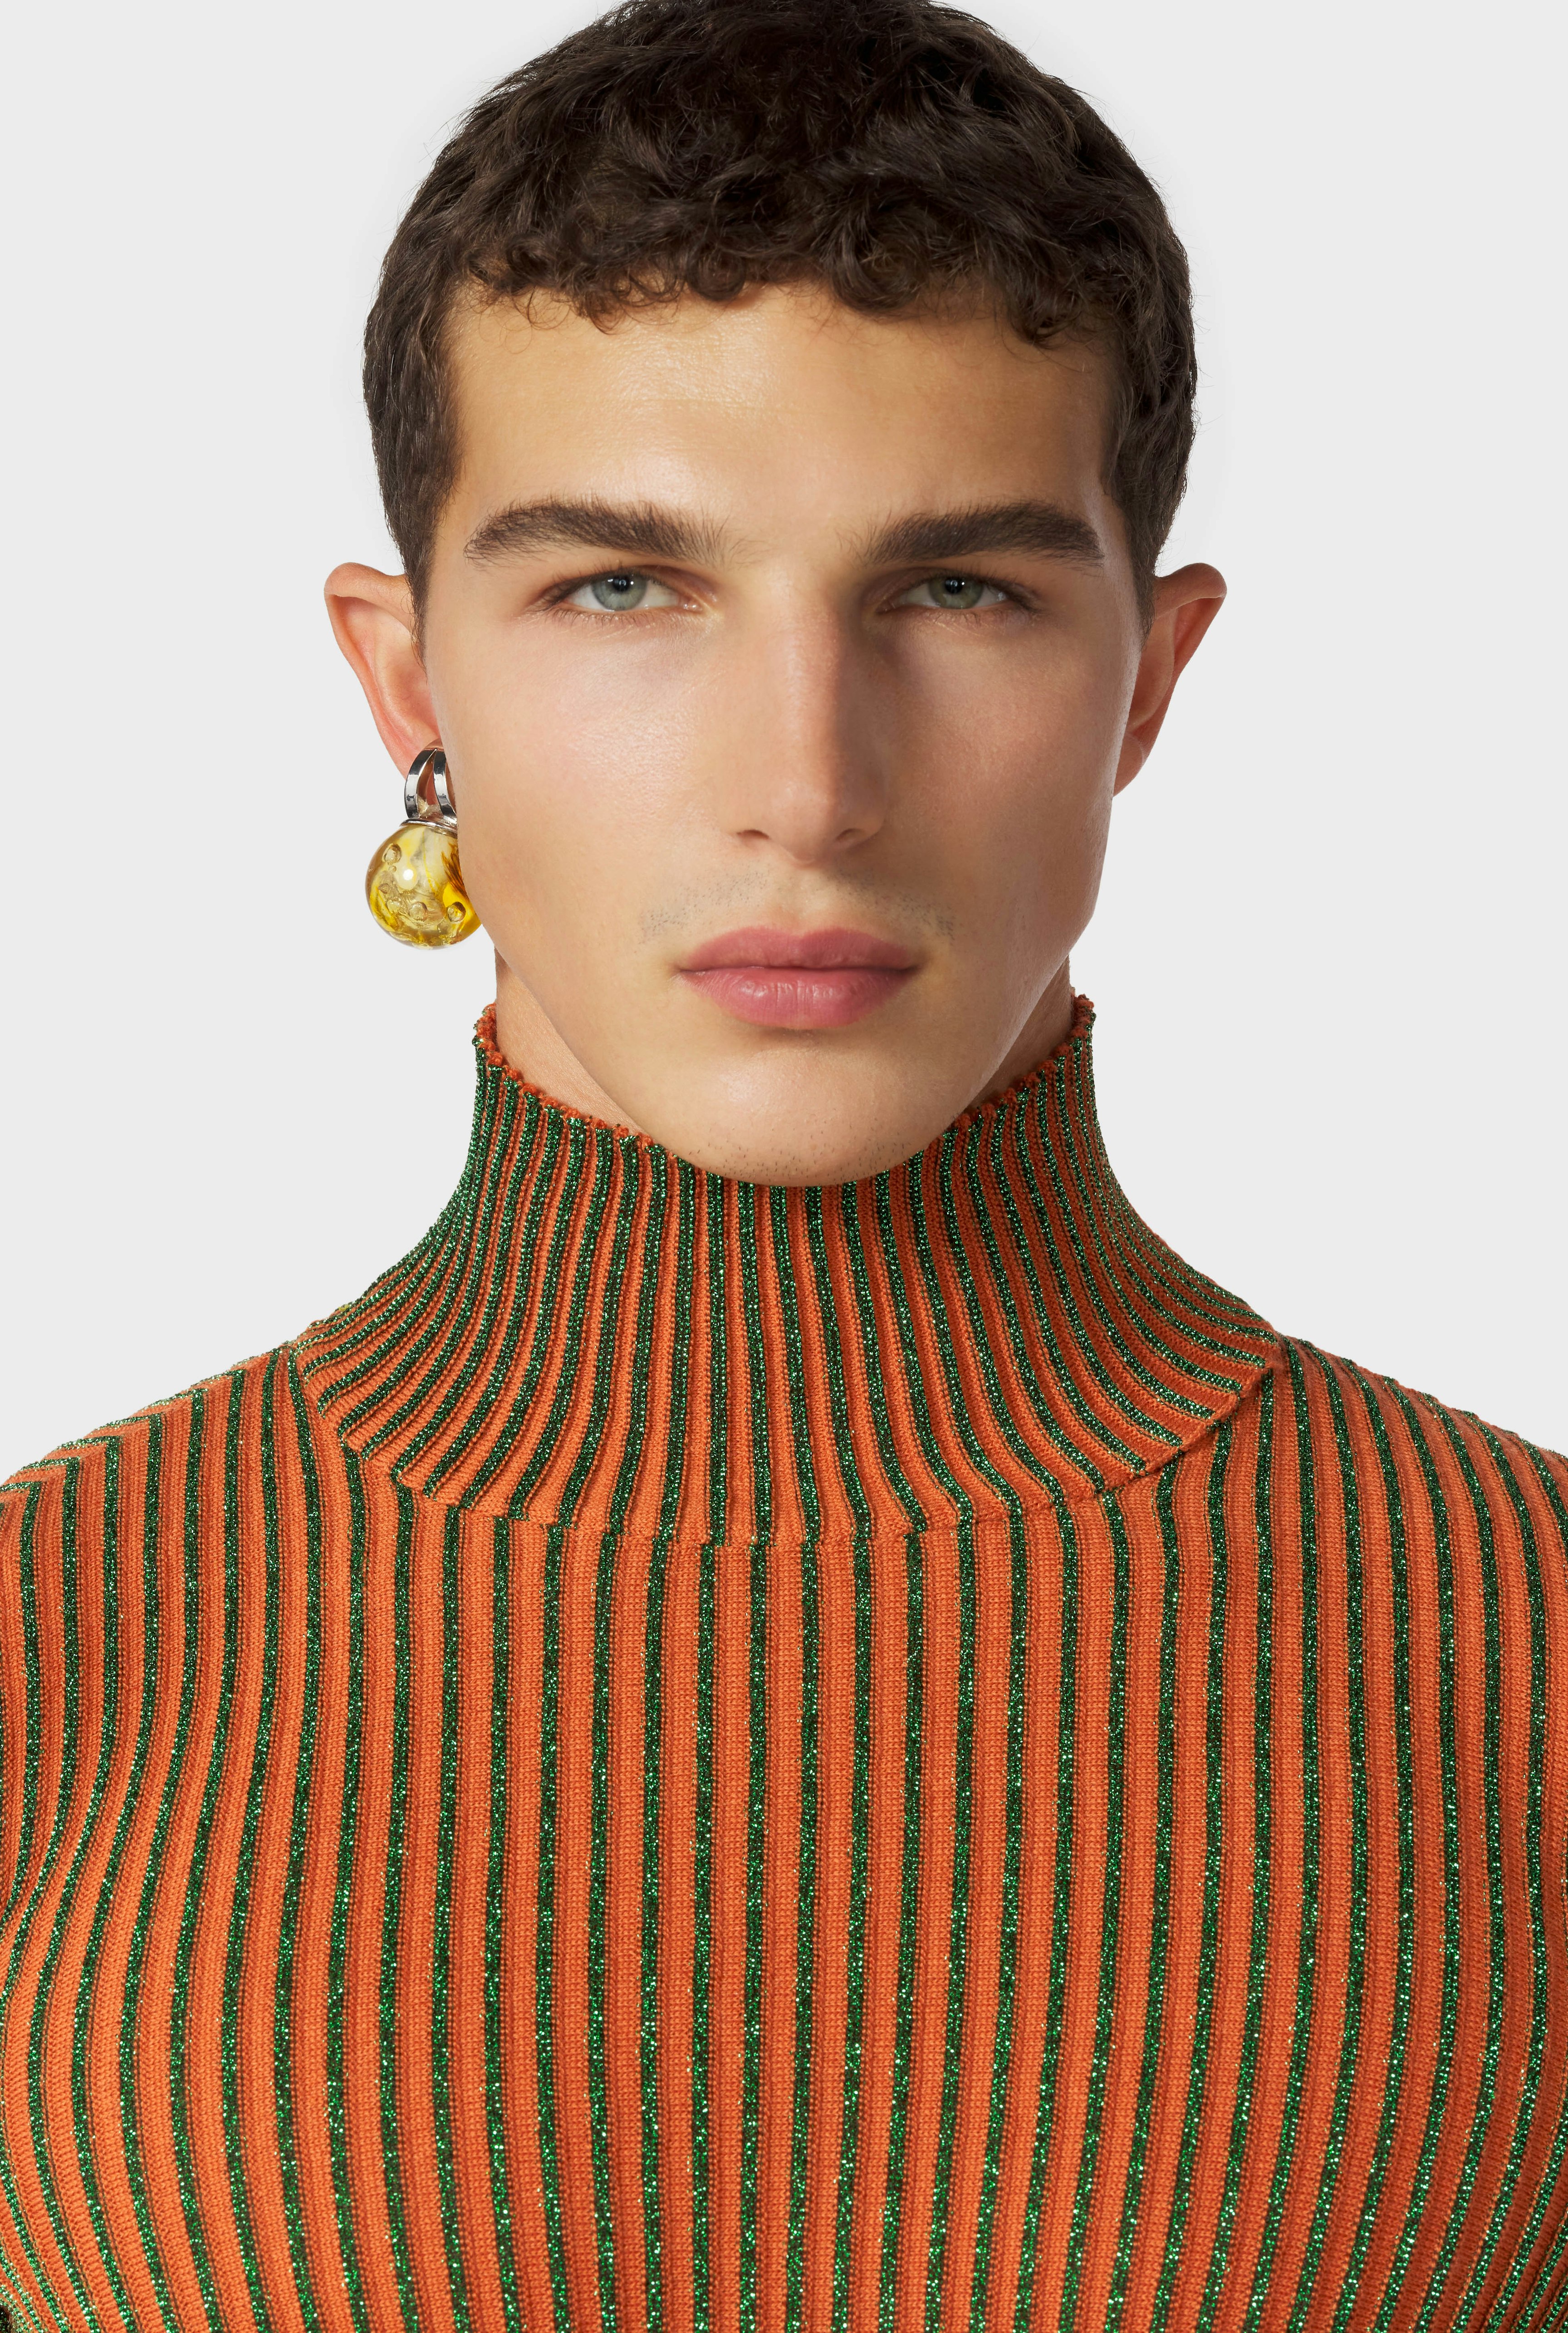 The Orange Cyber Knit Top Jean Paul Gaultier